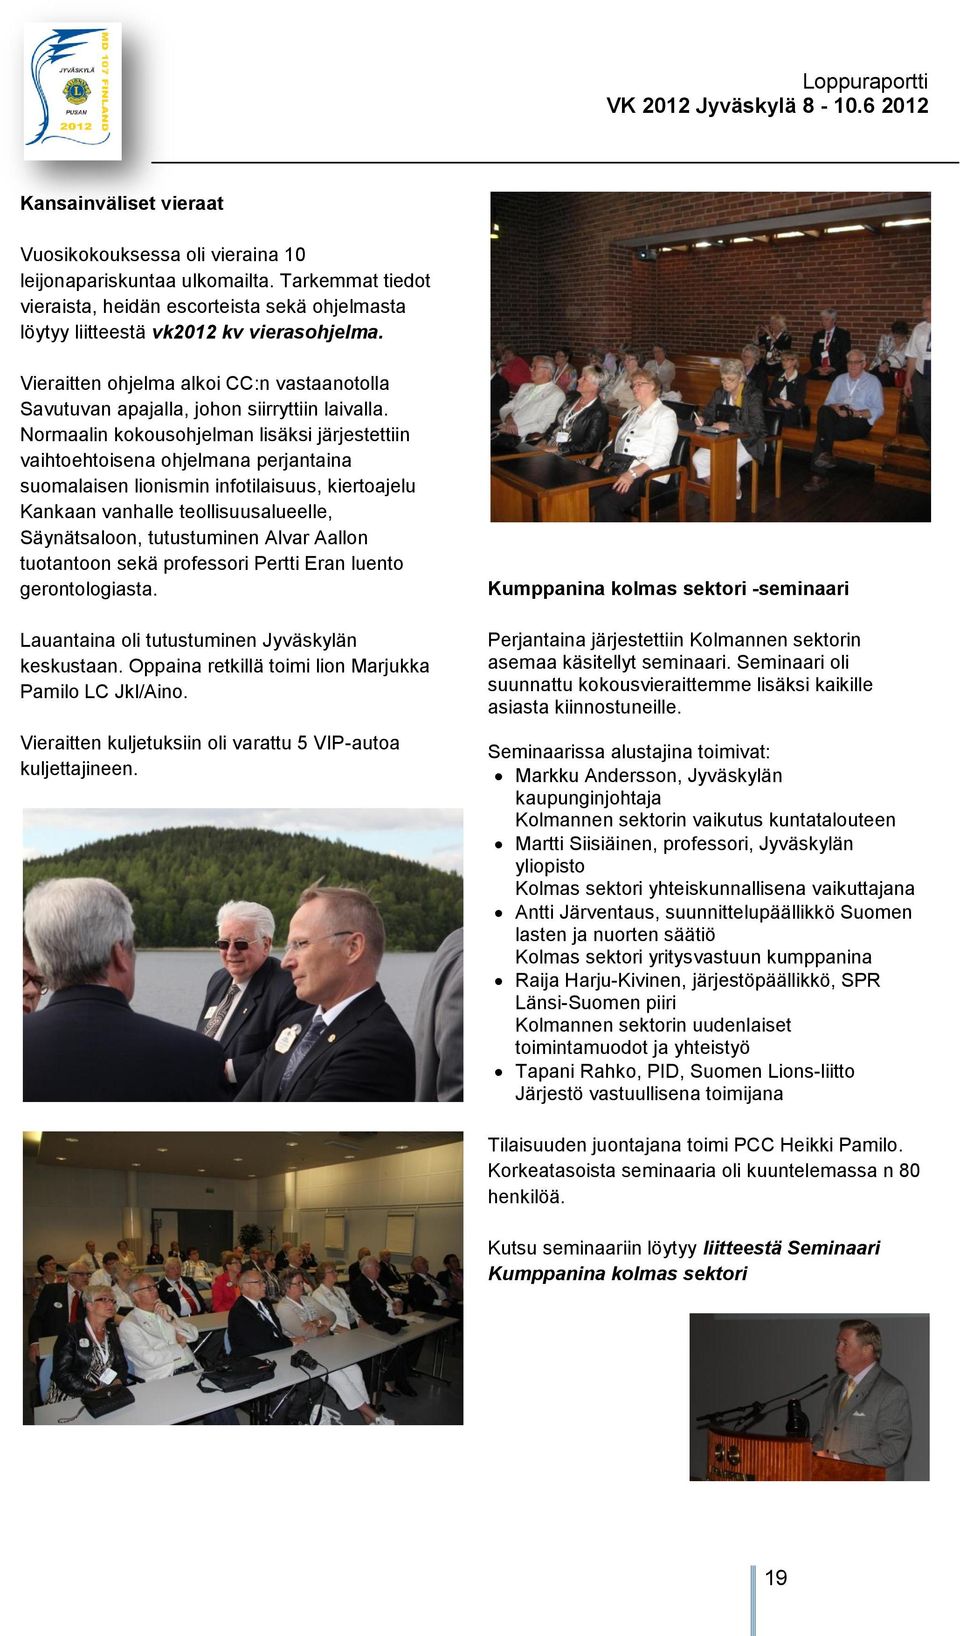 Normaalin kokousohjelman lisäksi järjestettiin vaihtoehtoisena ohjelmana perjantaina suomalaisen lionismin infotilaisuus, kiertoajelu Kankaan vanhalle teollisuusalueelle, Säynätsaloon, tutustuminen